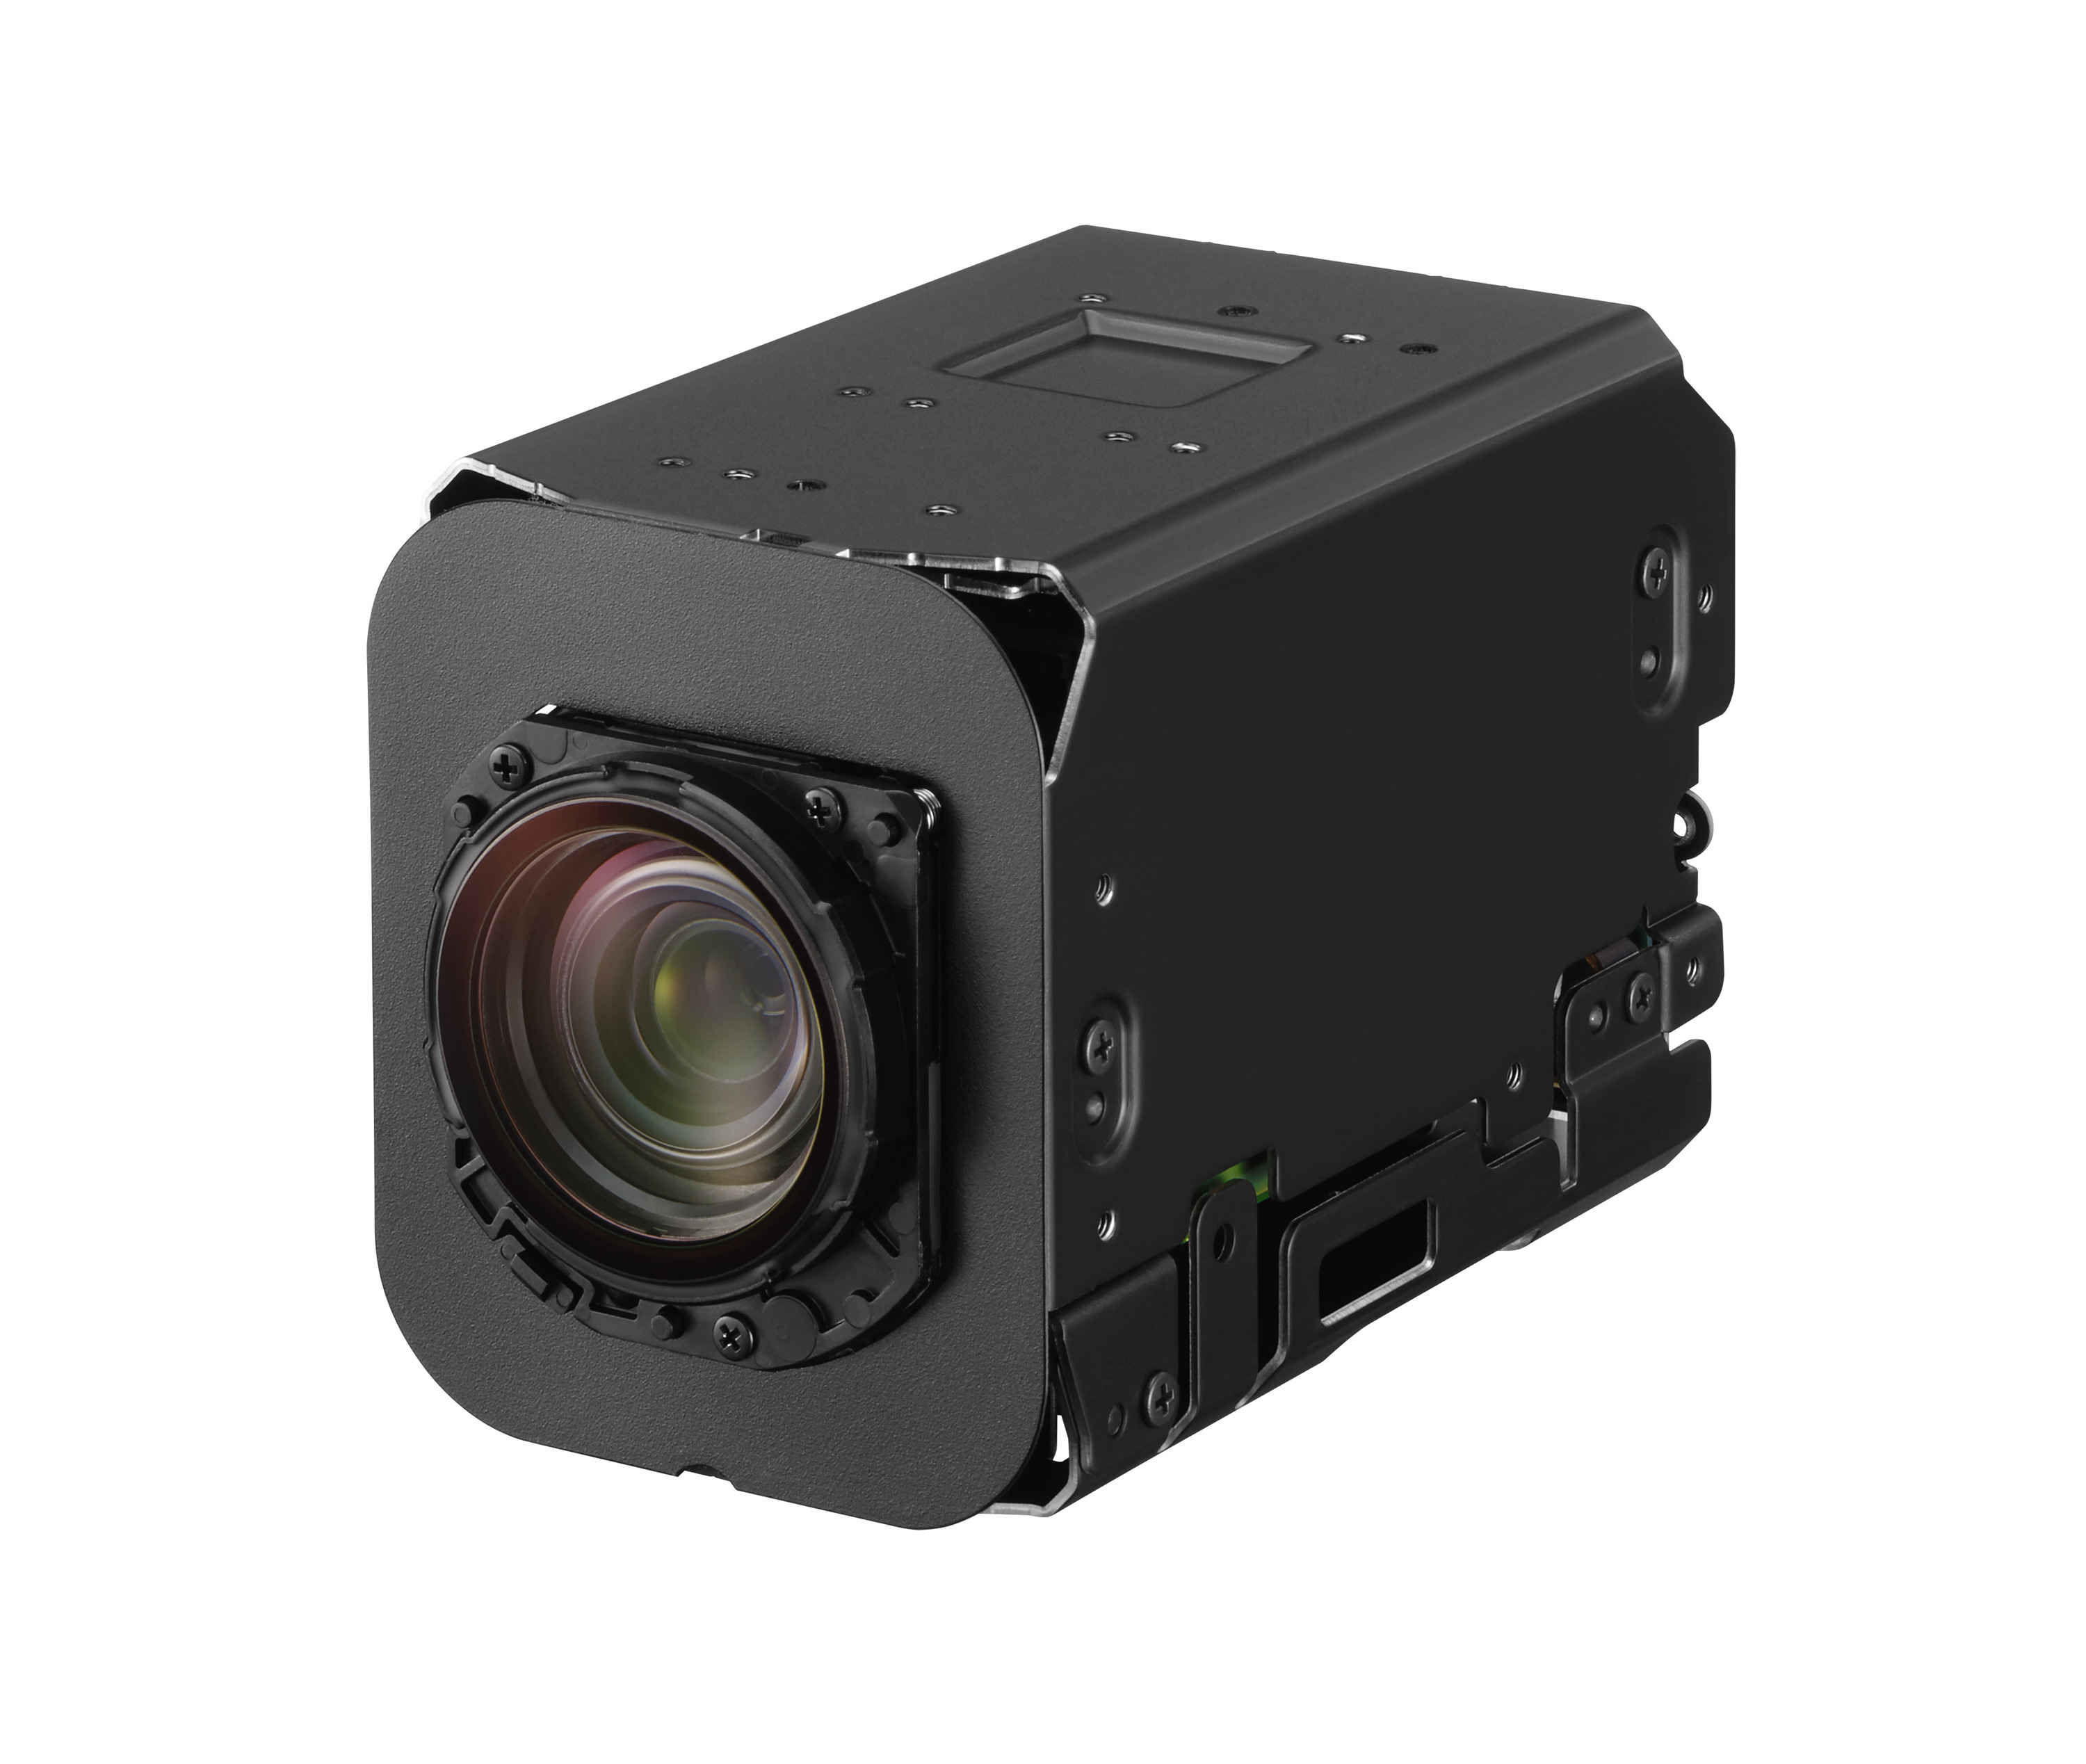 Image 3 – The Sony FCB-ER8550 4K block camera